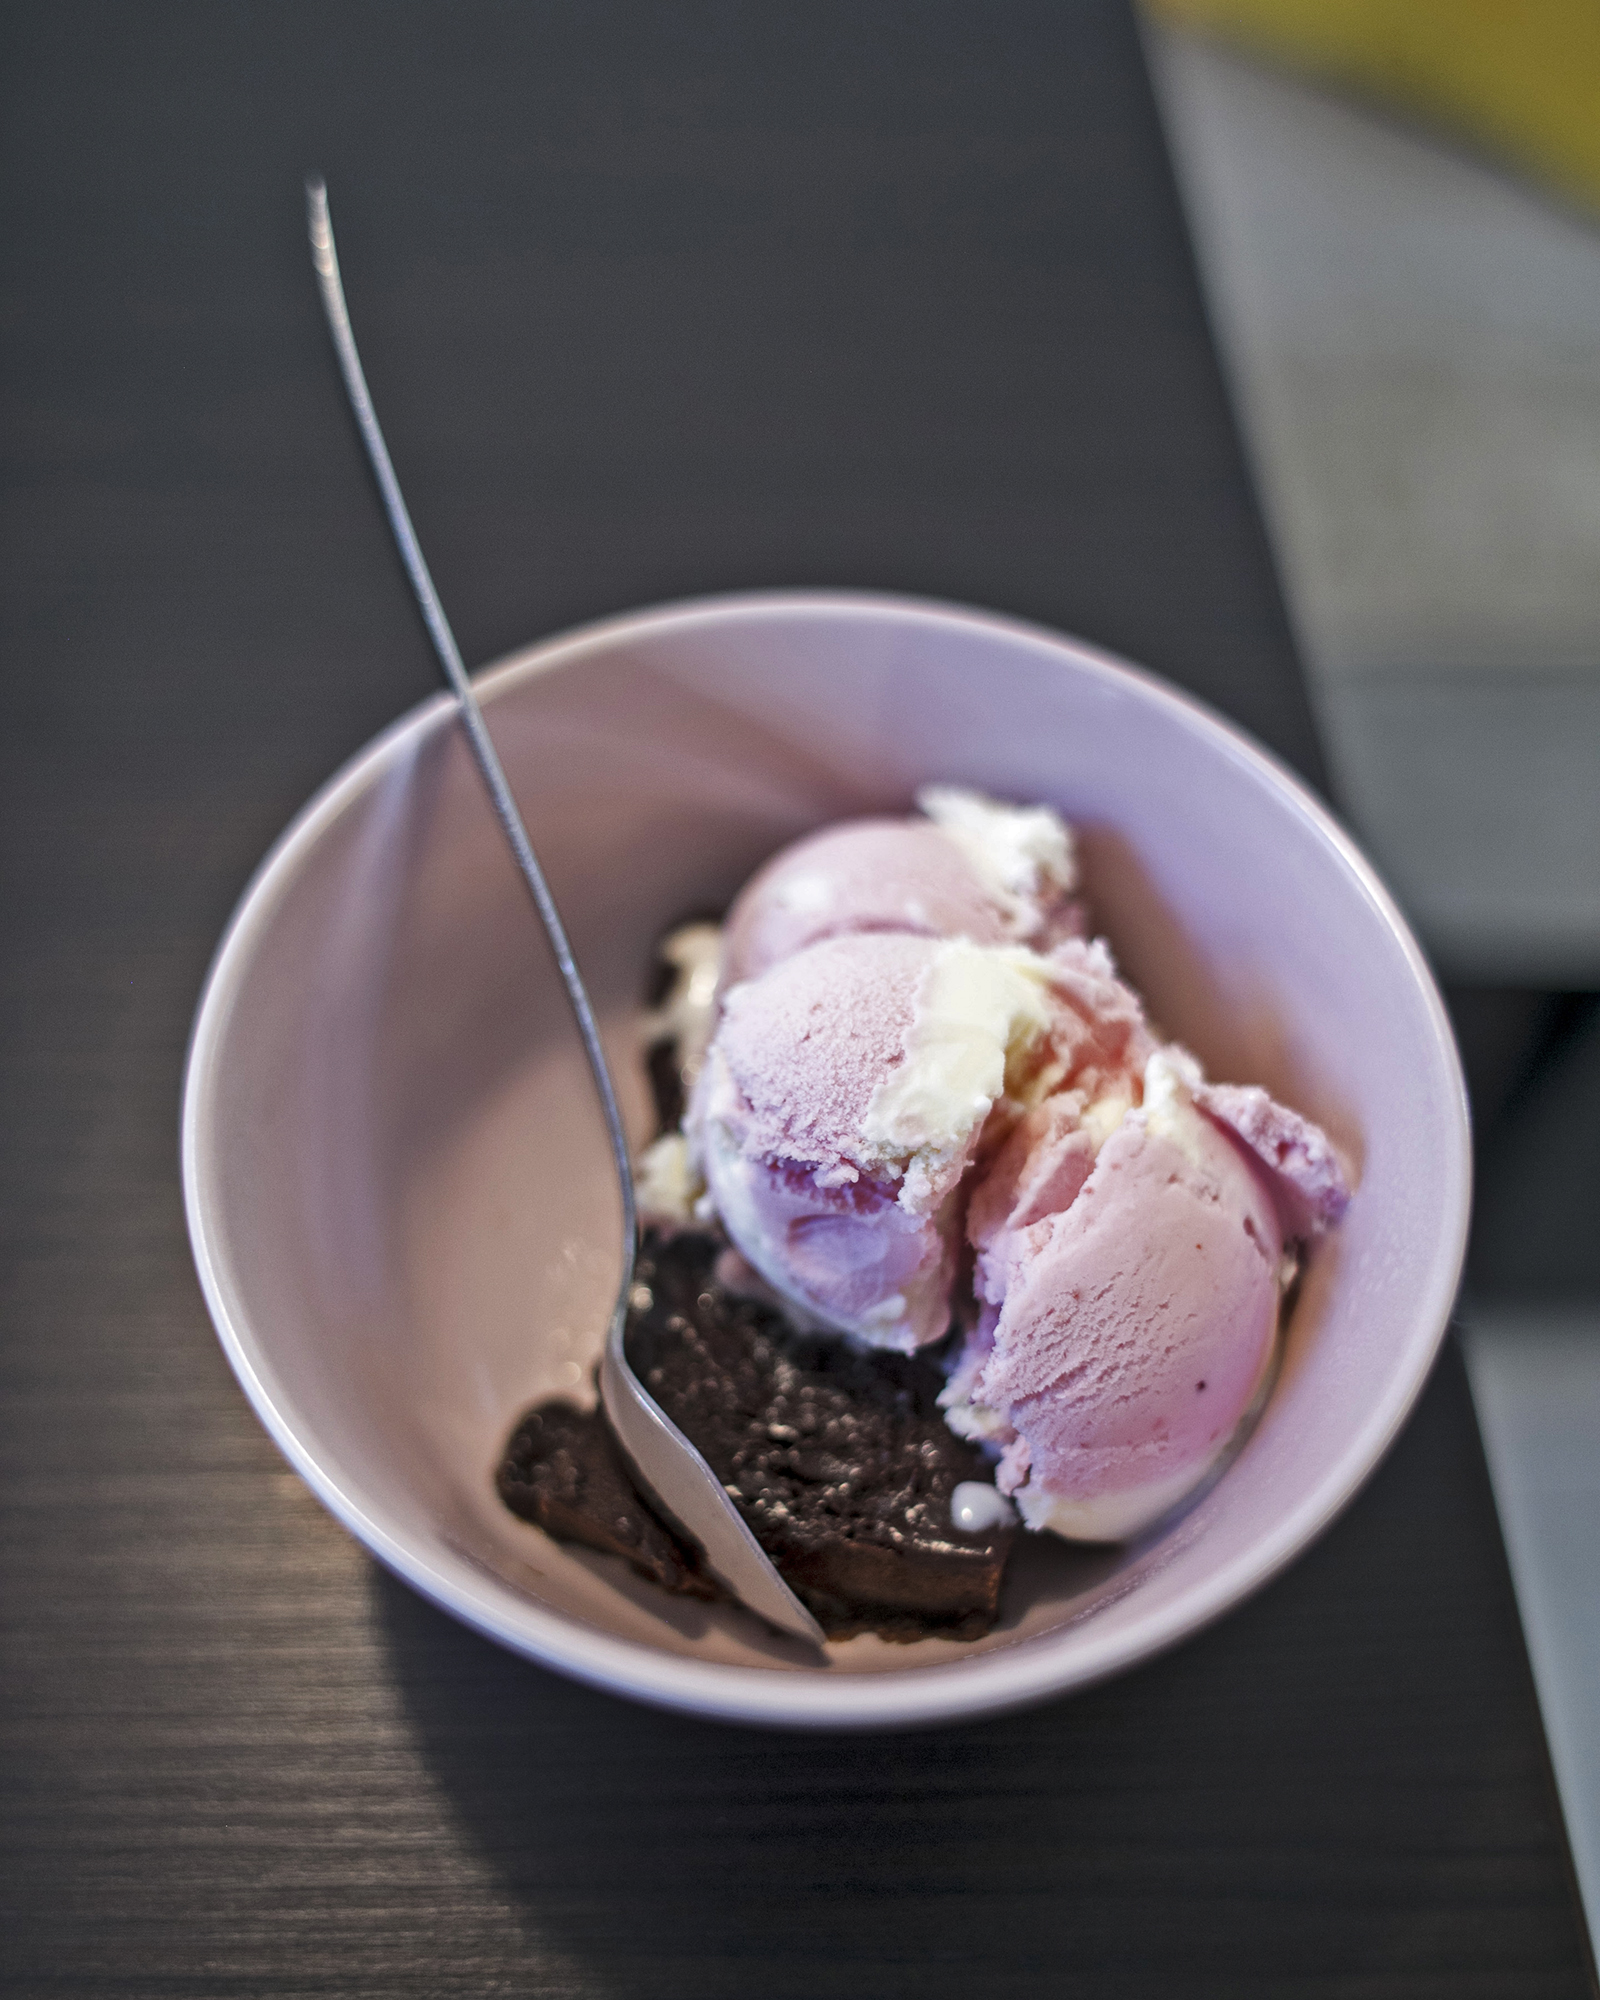 Apsolutni hit i danas je Brownie a la mode – topli brownie s kuglicom sladoleda. Može se birati između 7 vrsta brownieja i 12 vrsti sladoleda. Kombinacija toplo-hladnog deserta je 21 kuna.